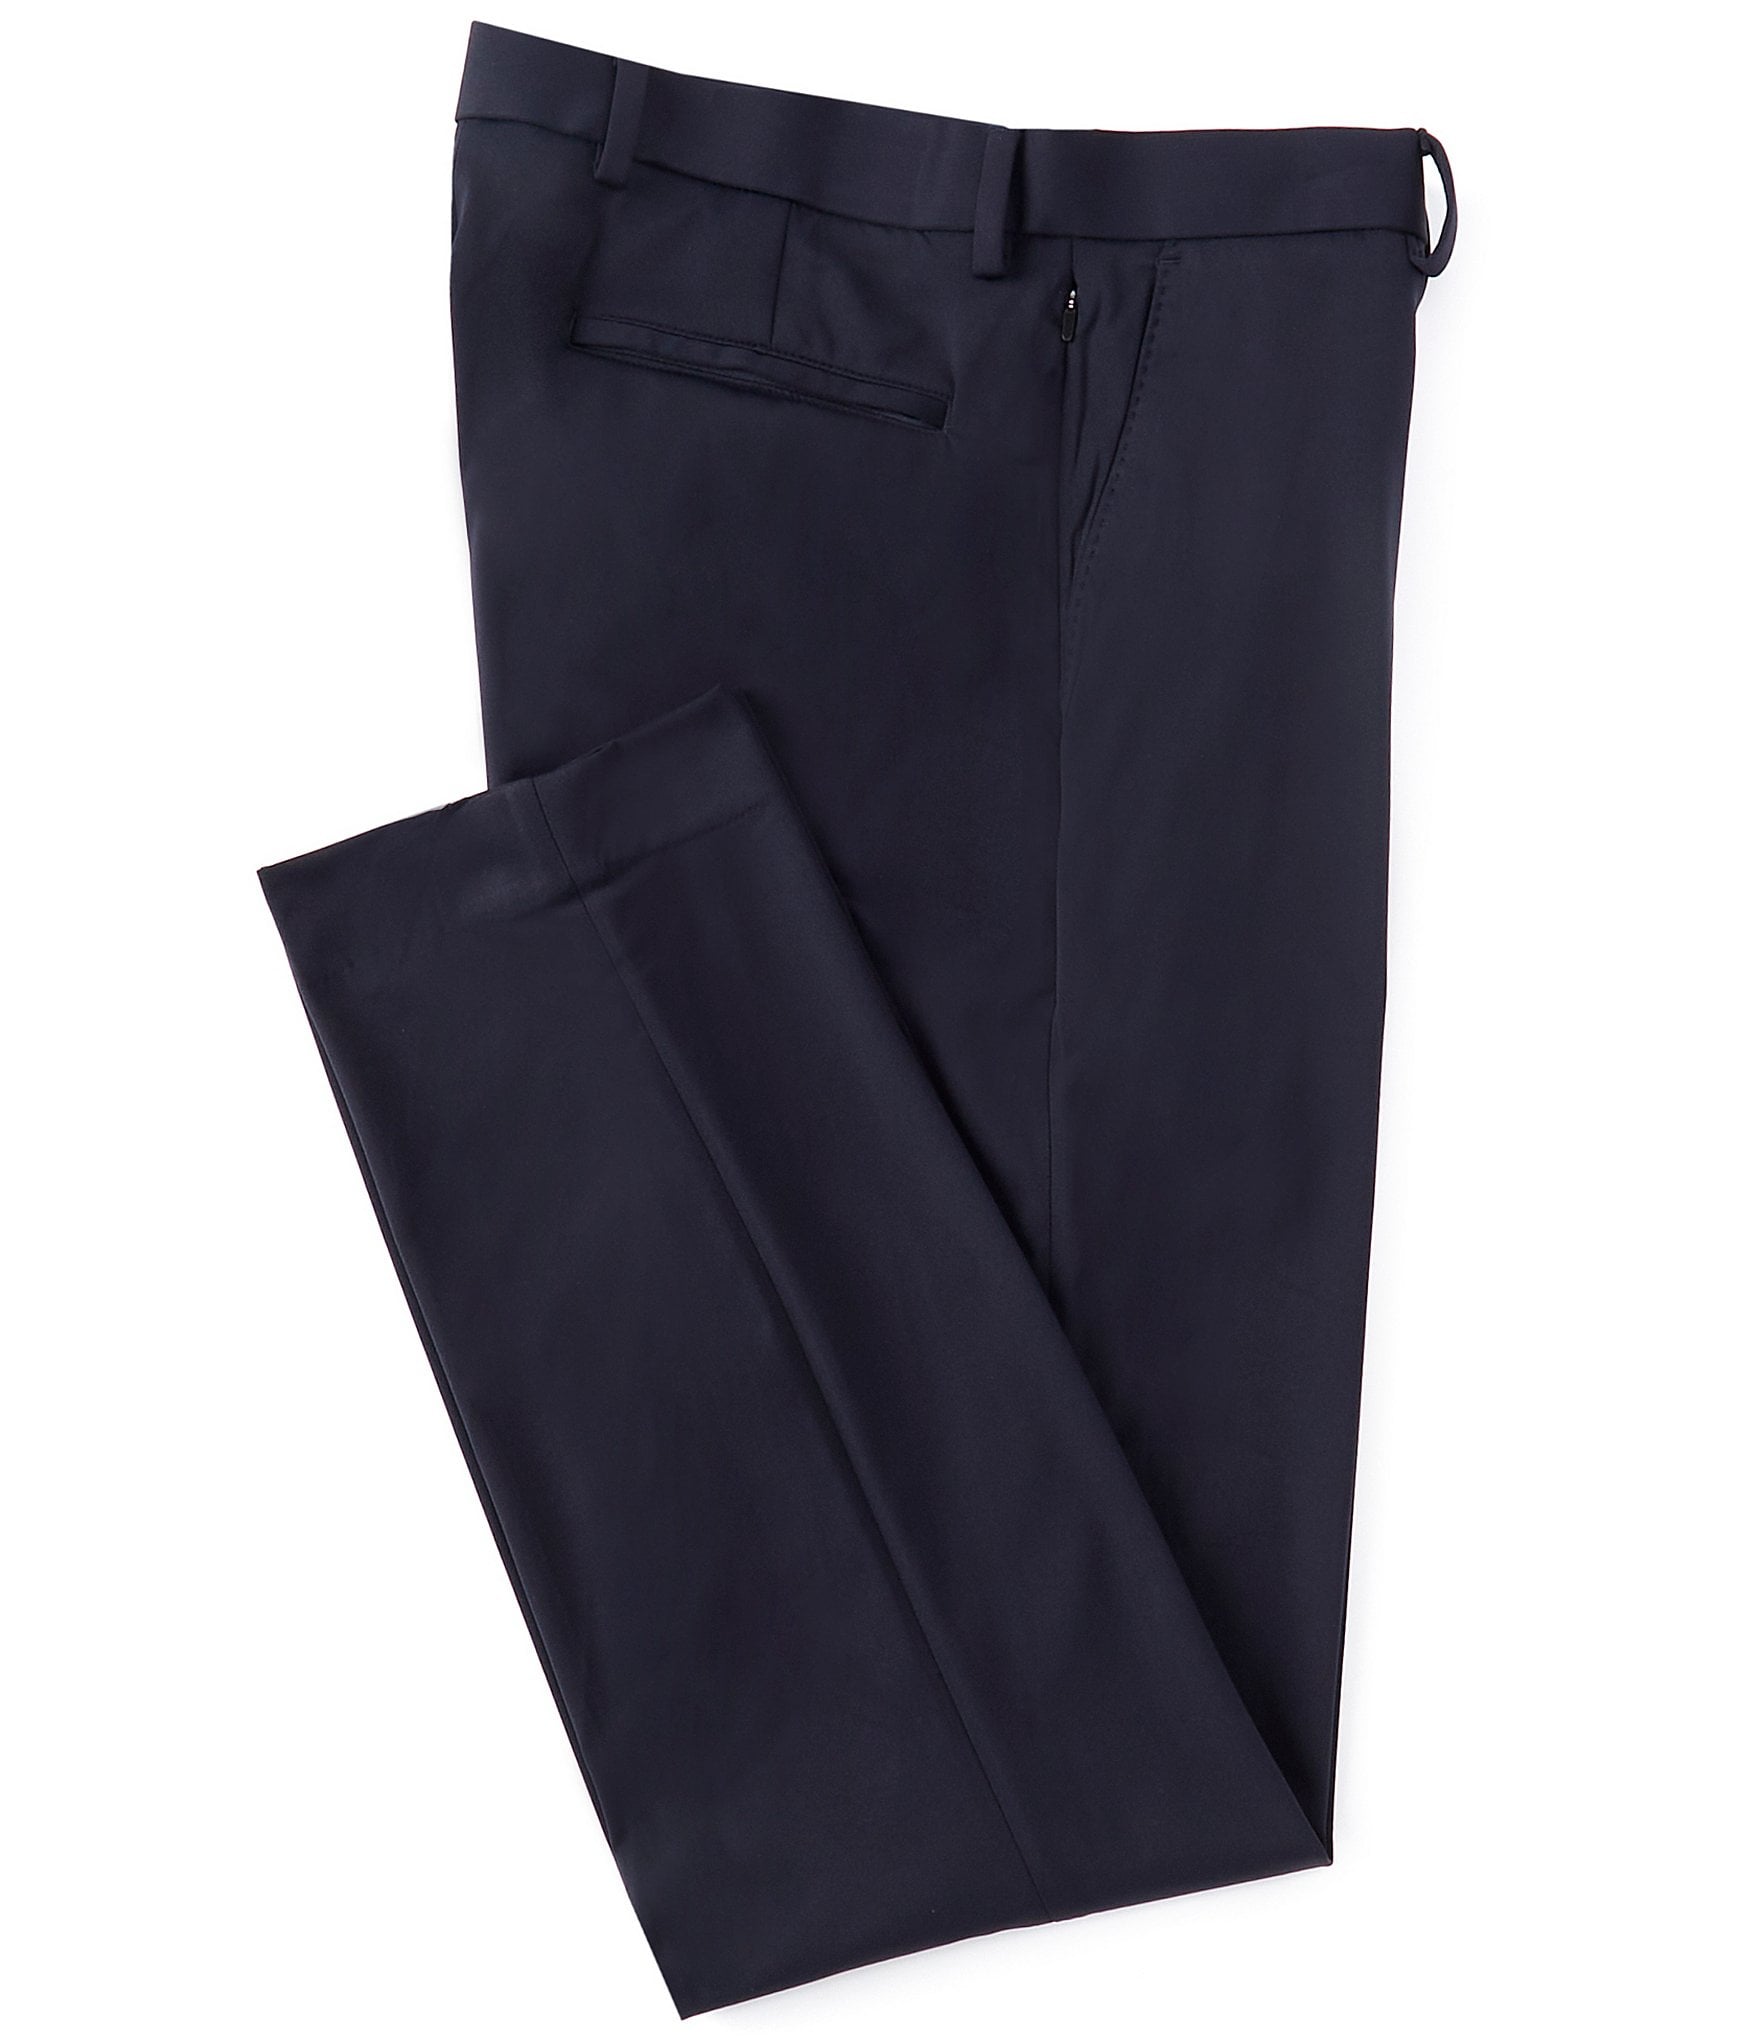 Buy Grey Trousers  Pants for Women by Nakd Online  Ajiocom